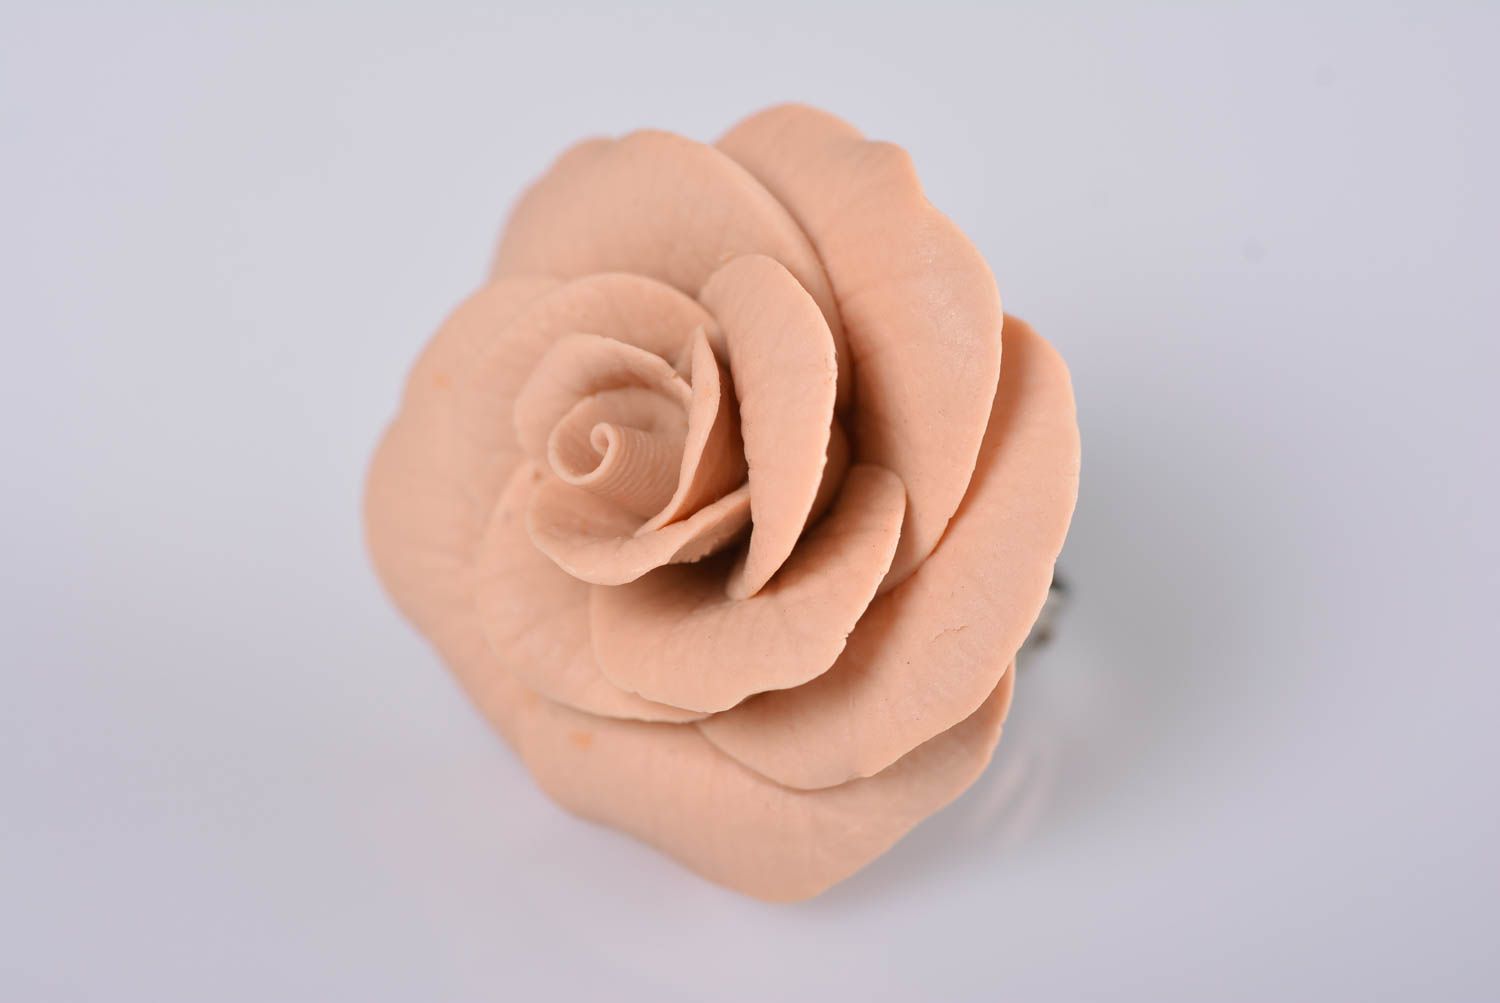 Кольцо с цветком из полимерной глины бежевое крупное нежное красивое хэнд мейд фото 5